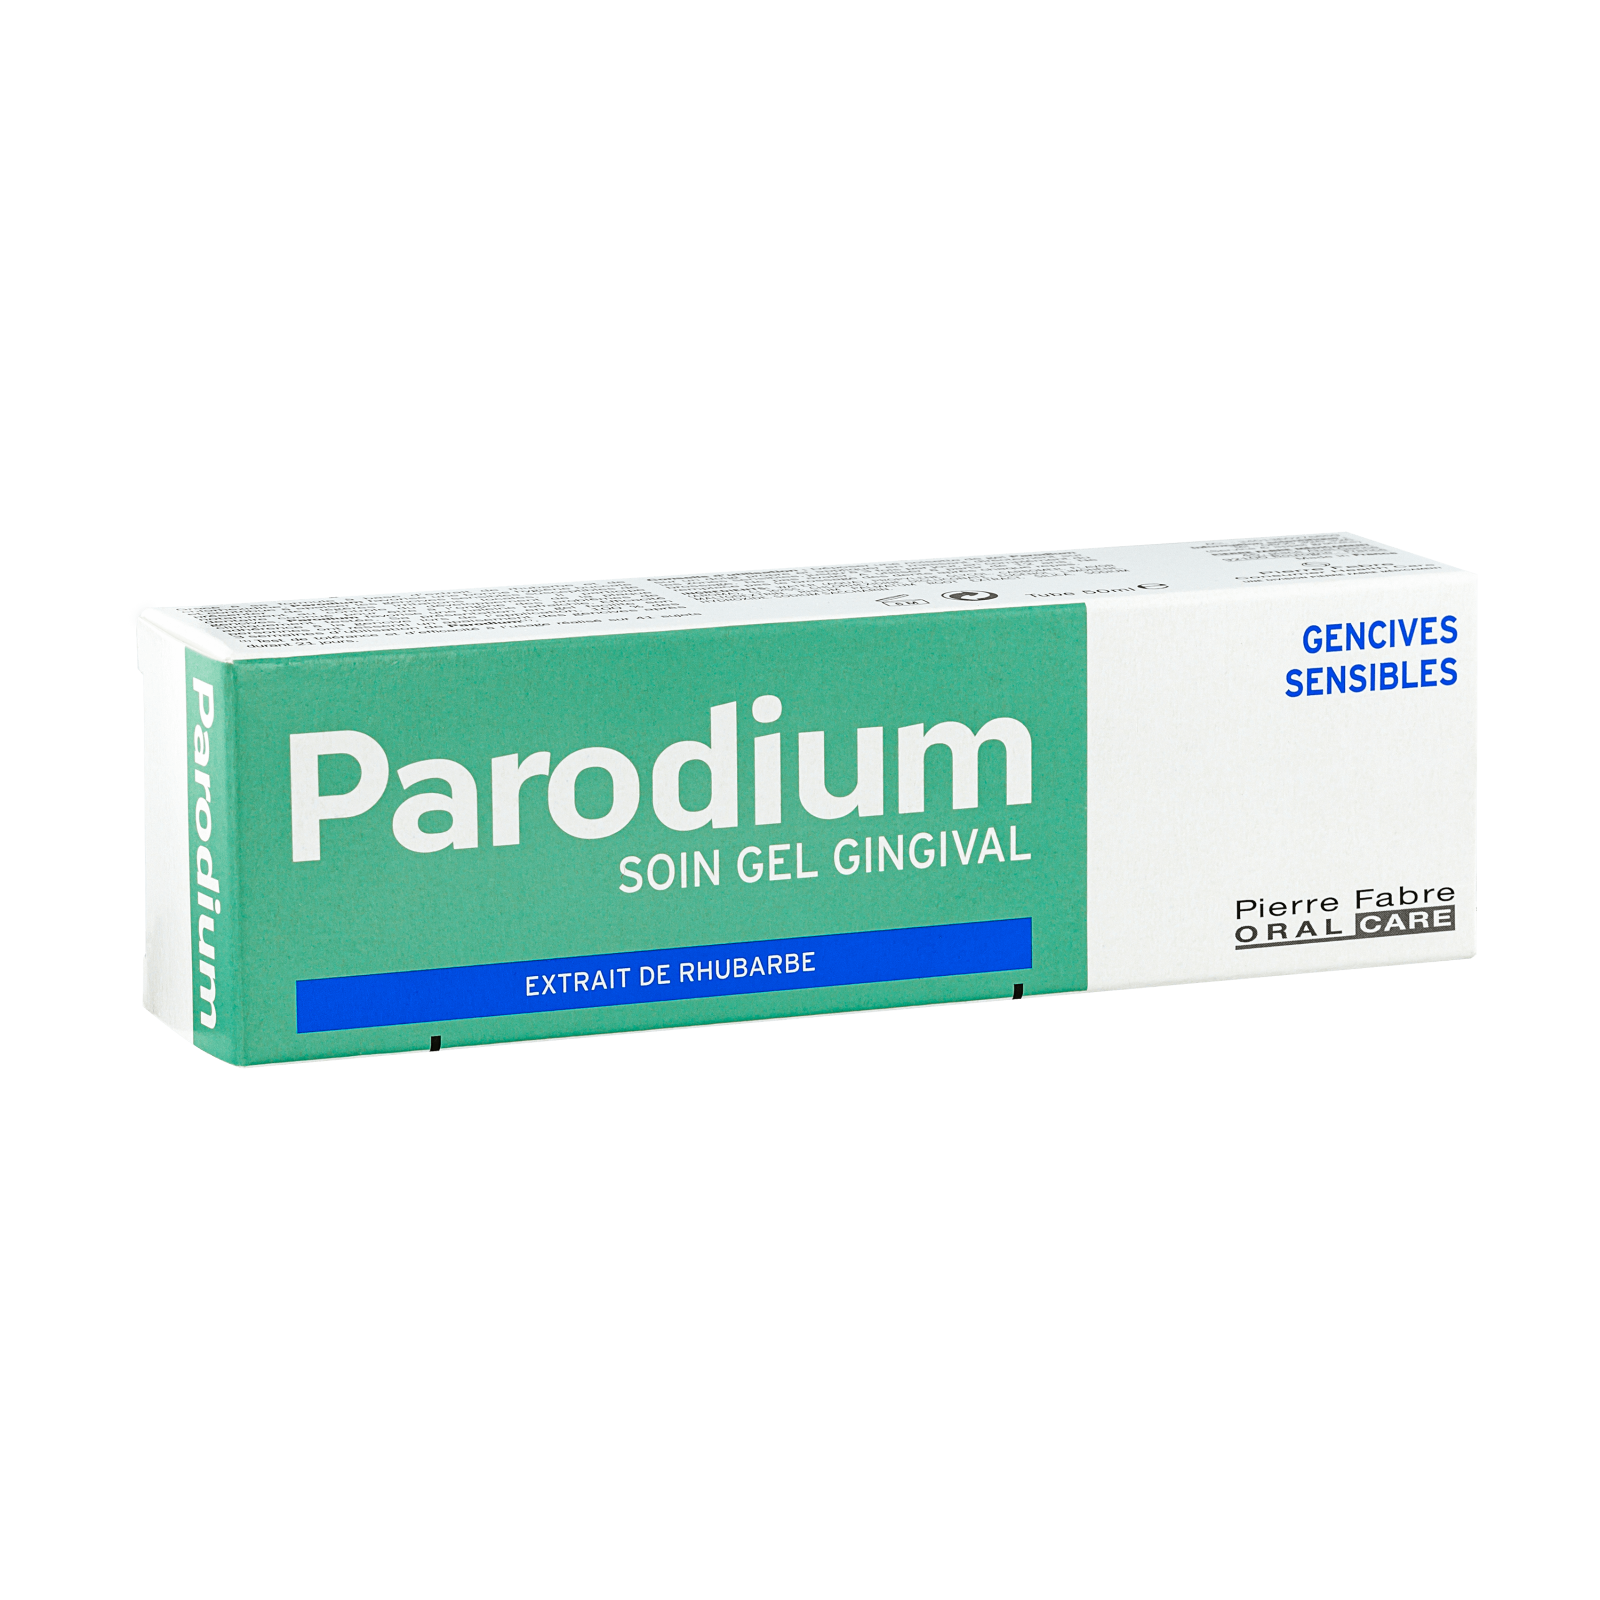 INGRIJIRE ORALA - PARODIUM -  gel pentru gingii, 50ml, sinapis.ro